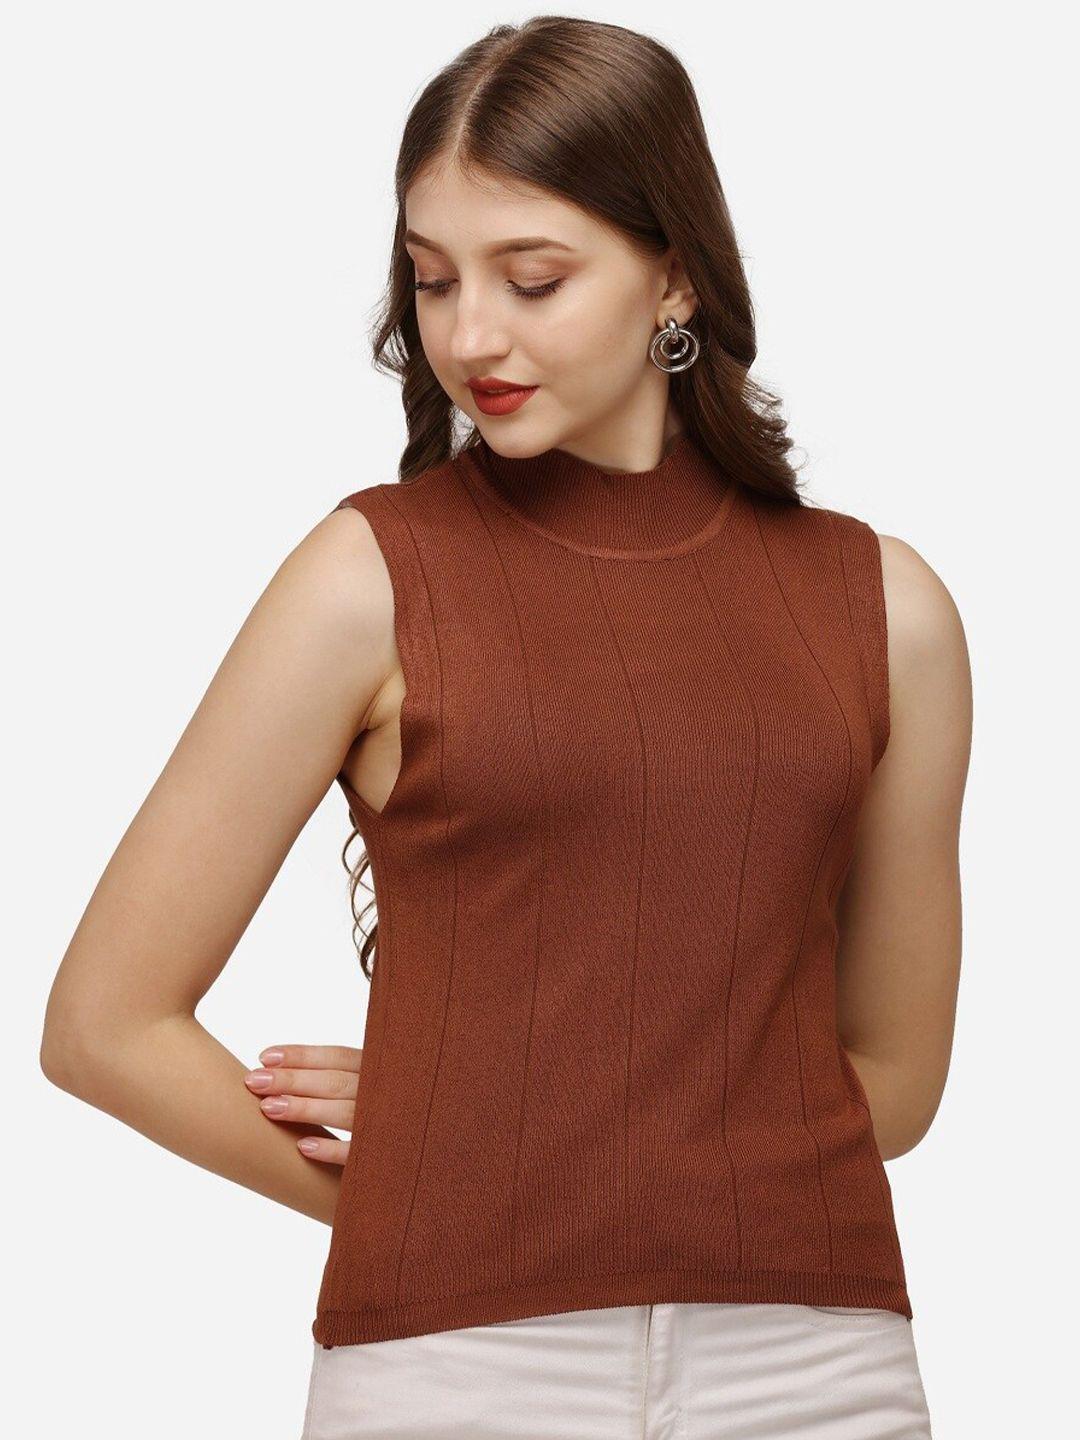 hsr women brown solid sleeveless top